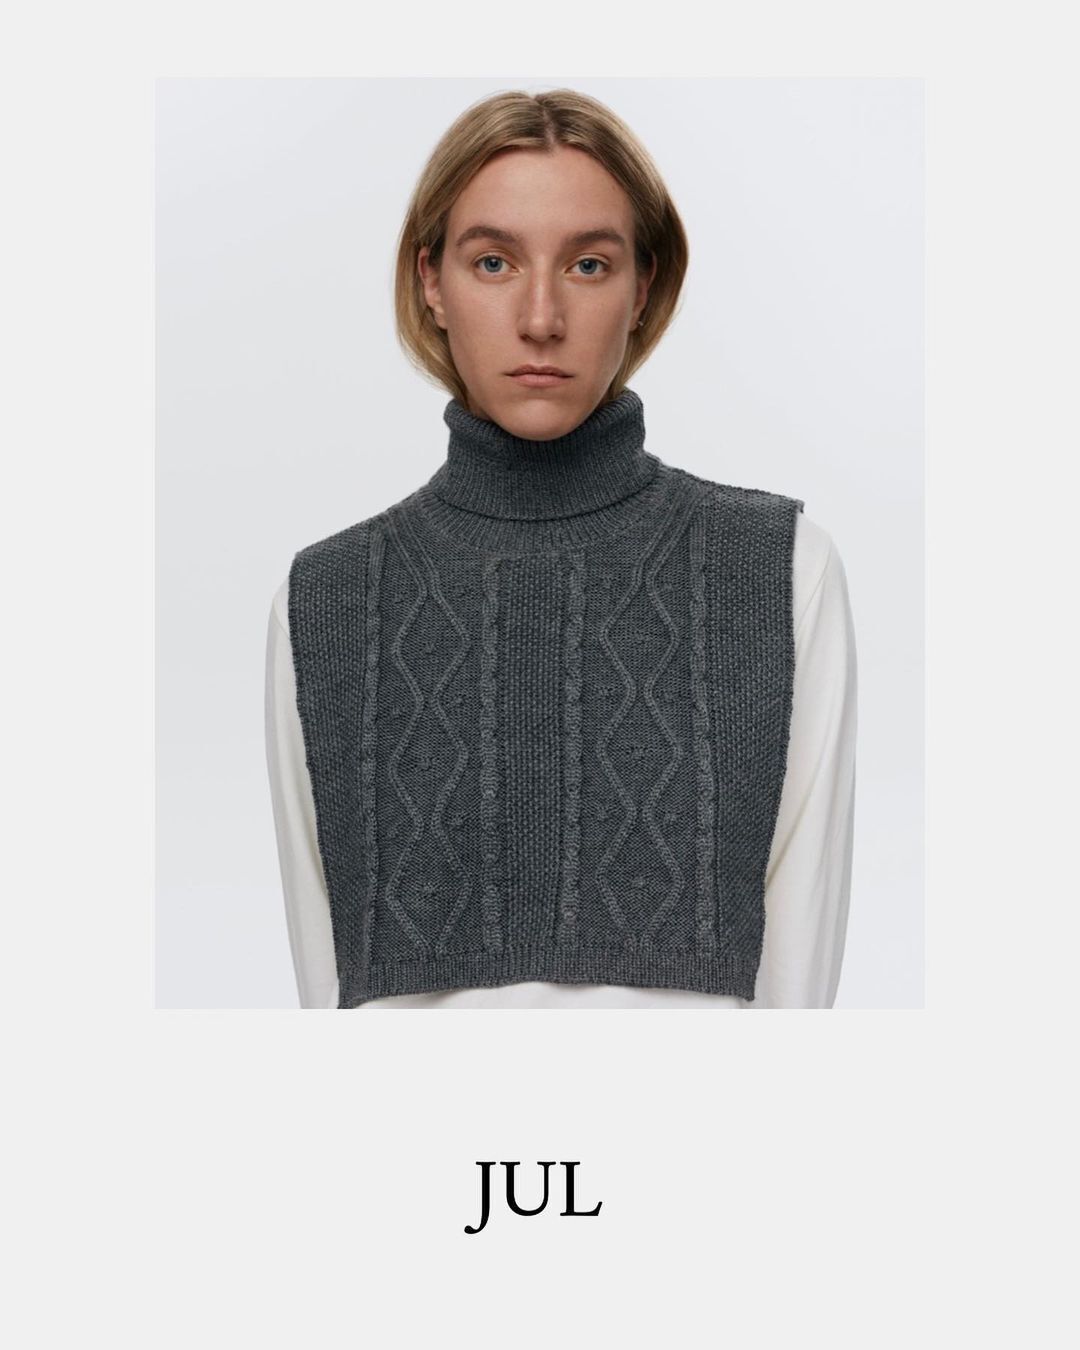 Модний бренд Jul показав, як комфотно можна утеплити шию та грудину